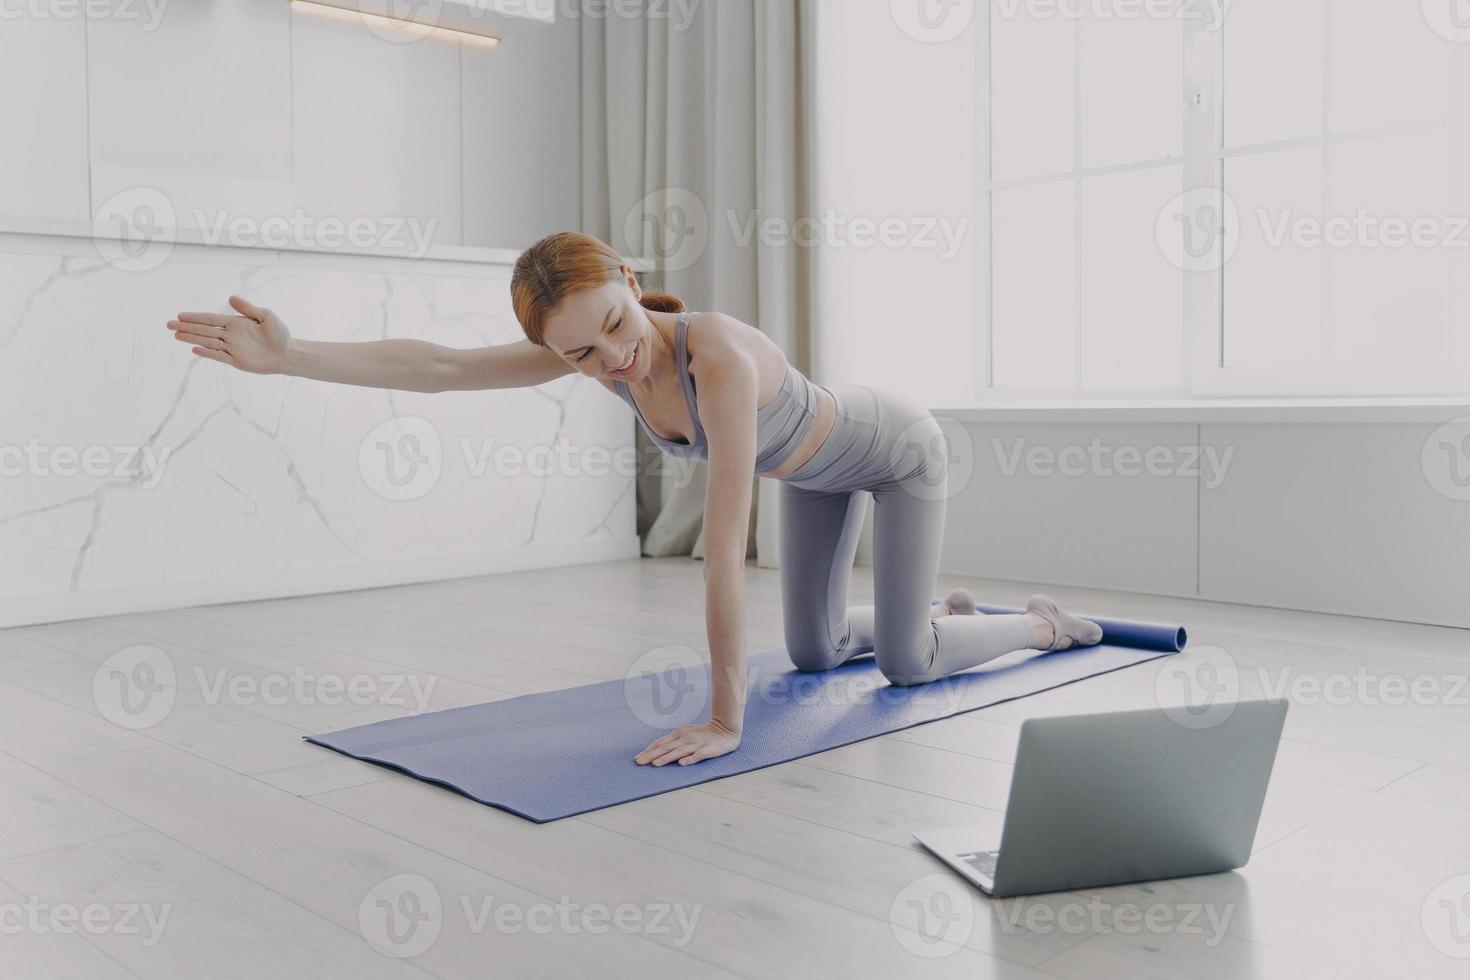 jeune femme pratiquant le yoga par tutoriel vidéo. exercice postural. cours à domicile en quarantaine. photo